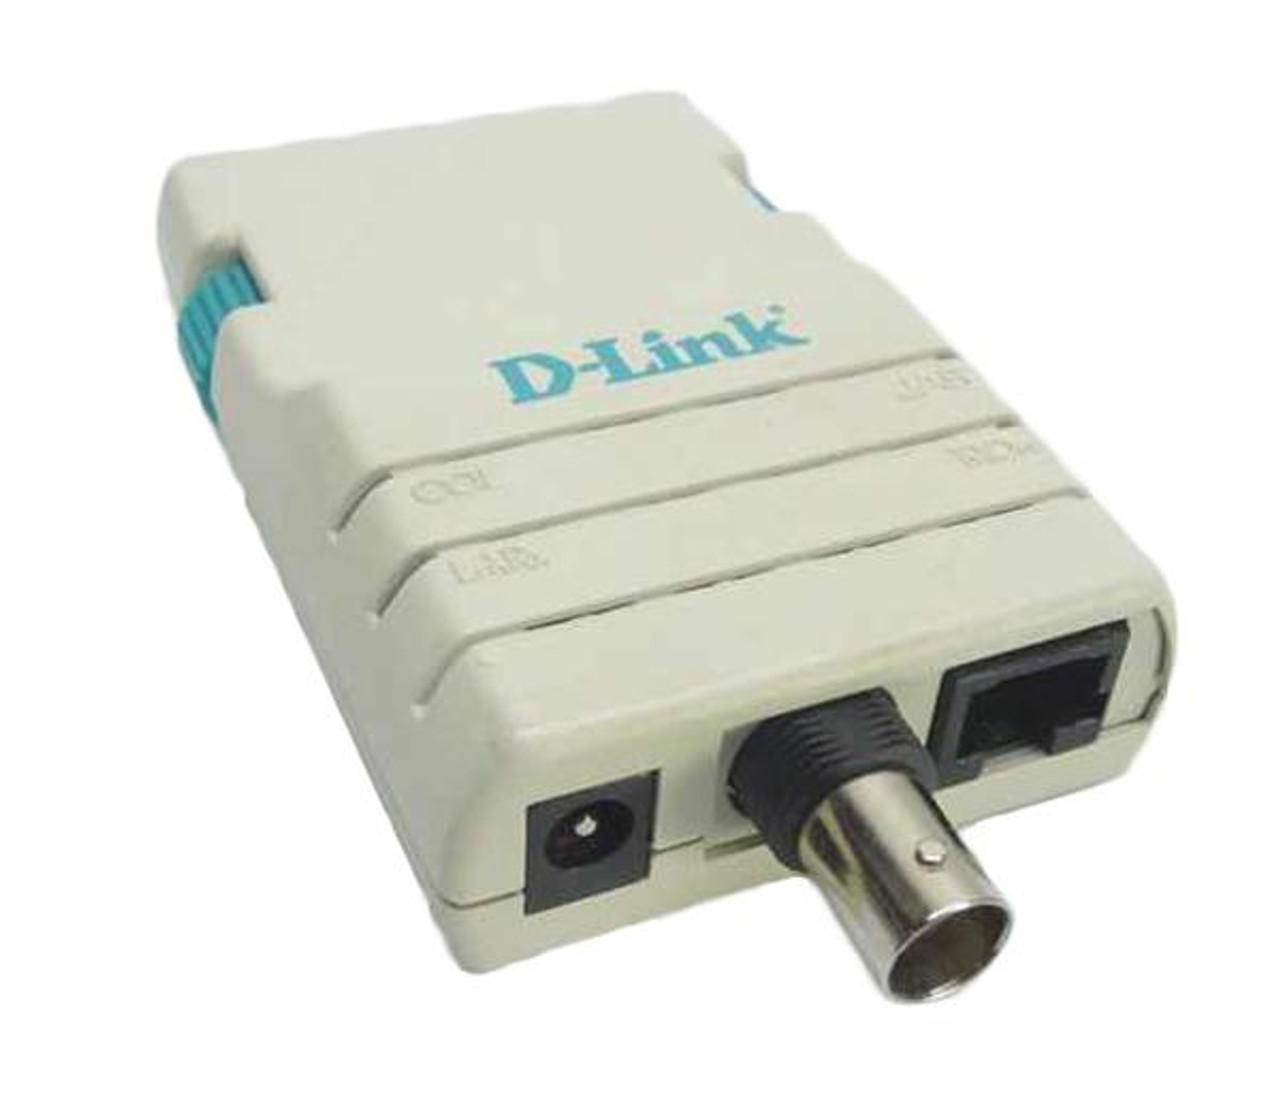 DE-620CT D-Link Ethernet Pocket Lan Adapter